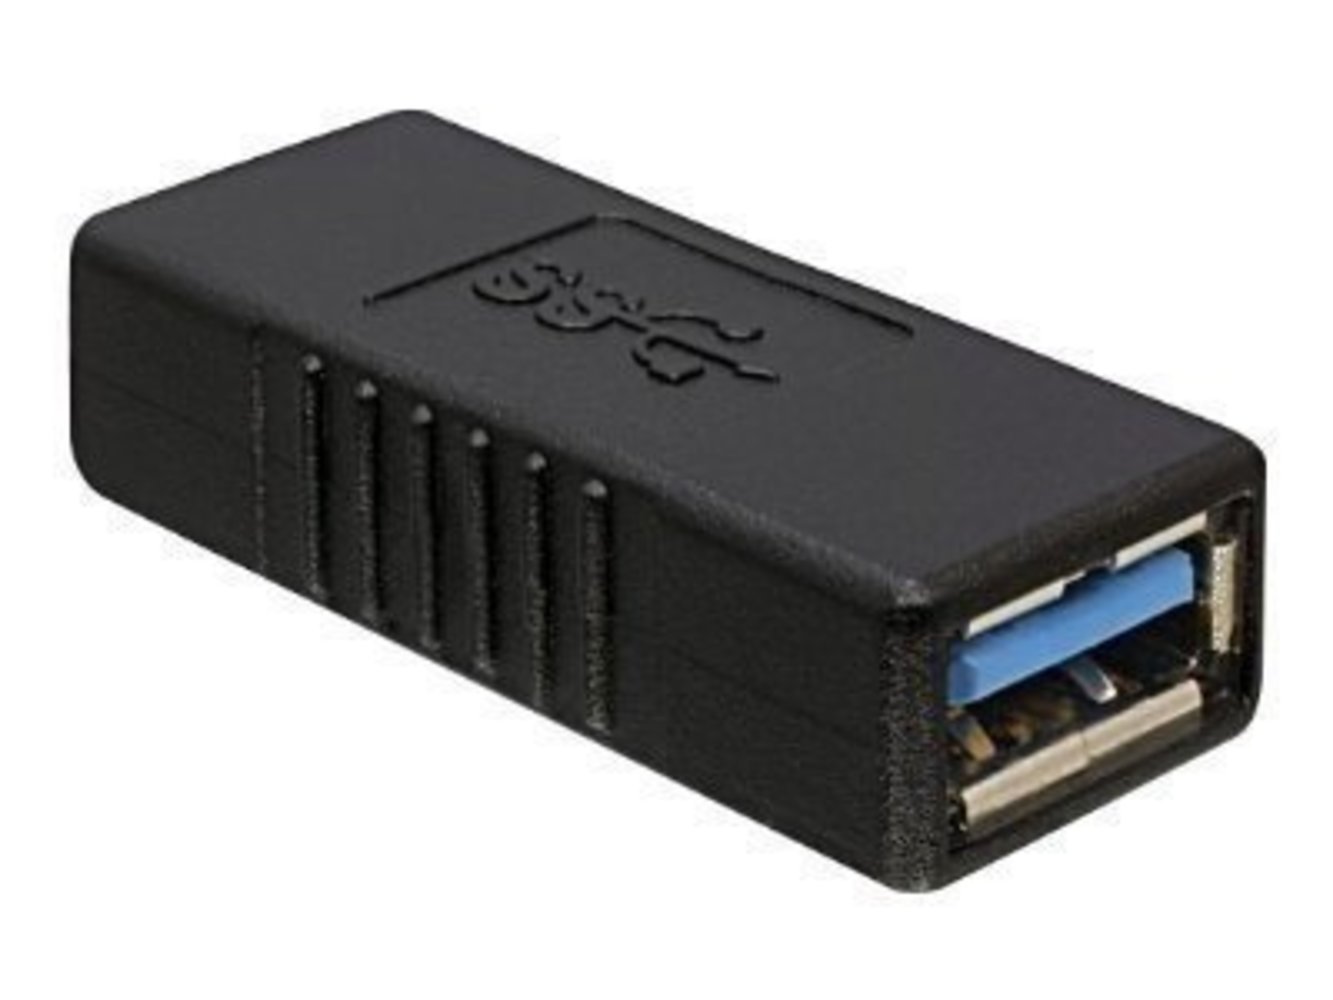 DELOCK Adapter USB 3.0 A/A Bu/Bu - Hochwertiger USB 3.0 Adapter für schnelle Datenübertragung